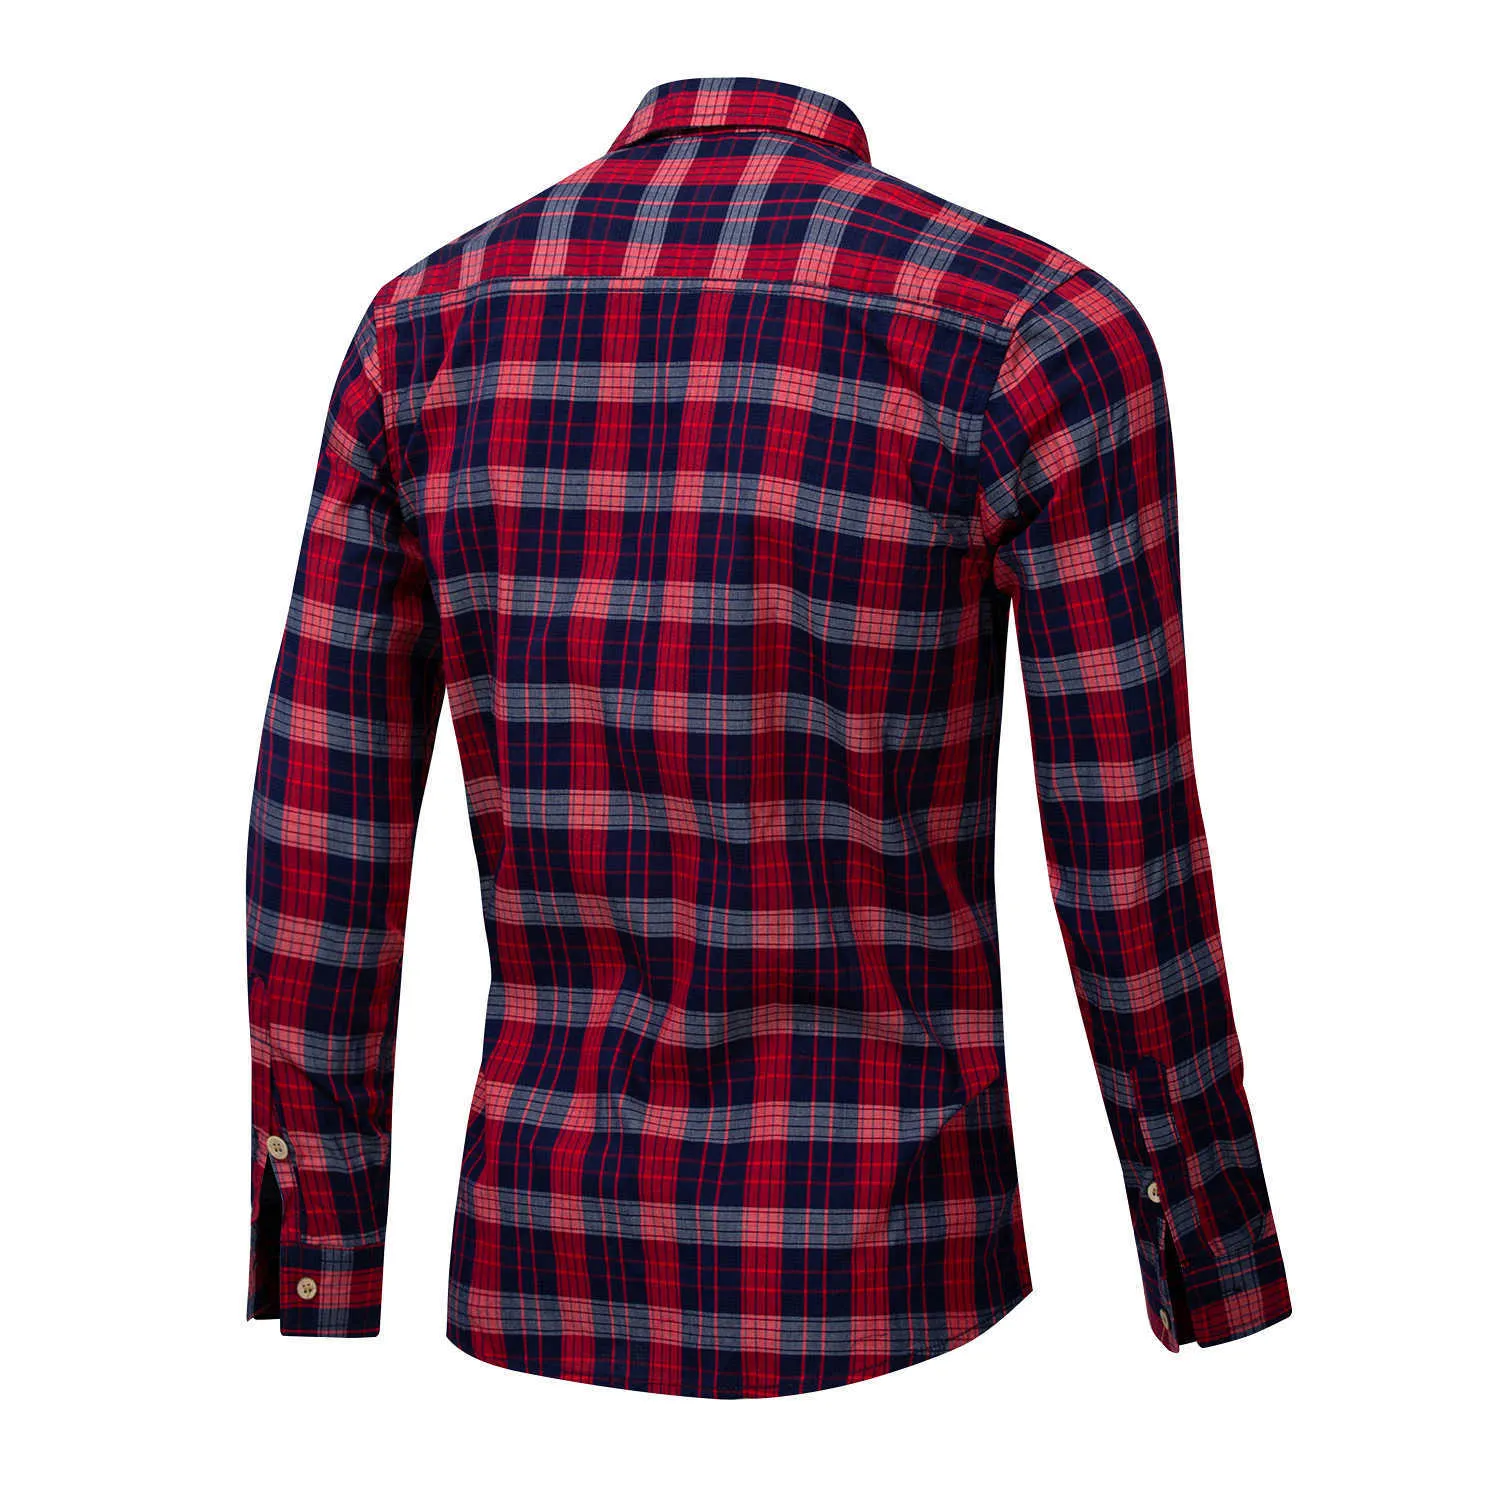 Fredd Marshall Fashion Red Plaid Shirt Men Casual Długim Rękawem Slim Fit Koszulki z kieszenią 100% bawełna EUR Duży rozmiar 198 210527